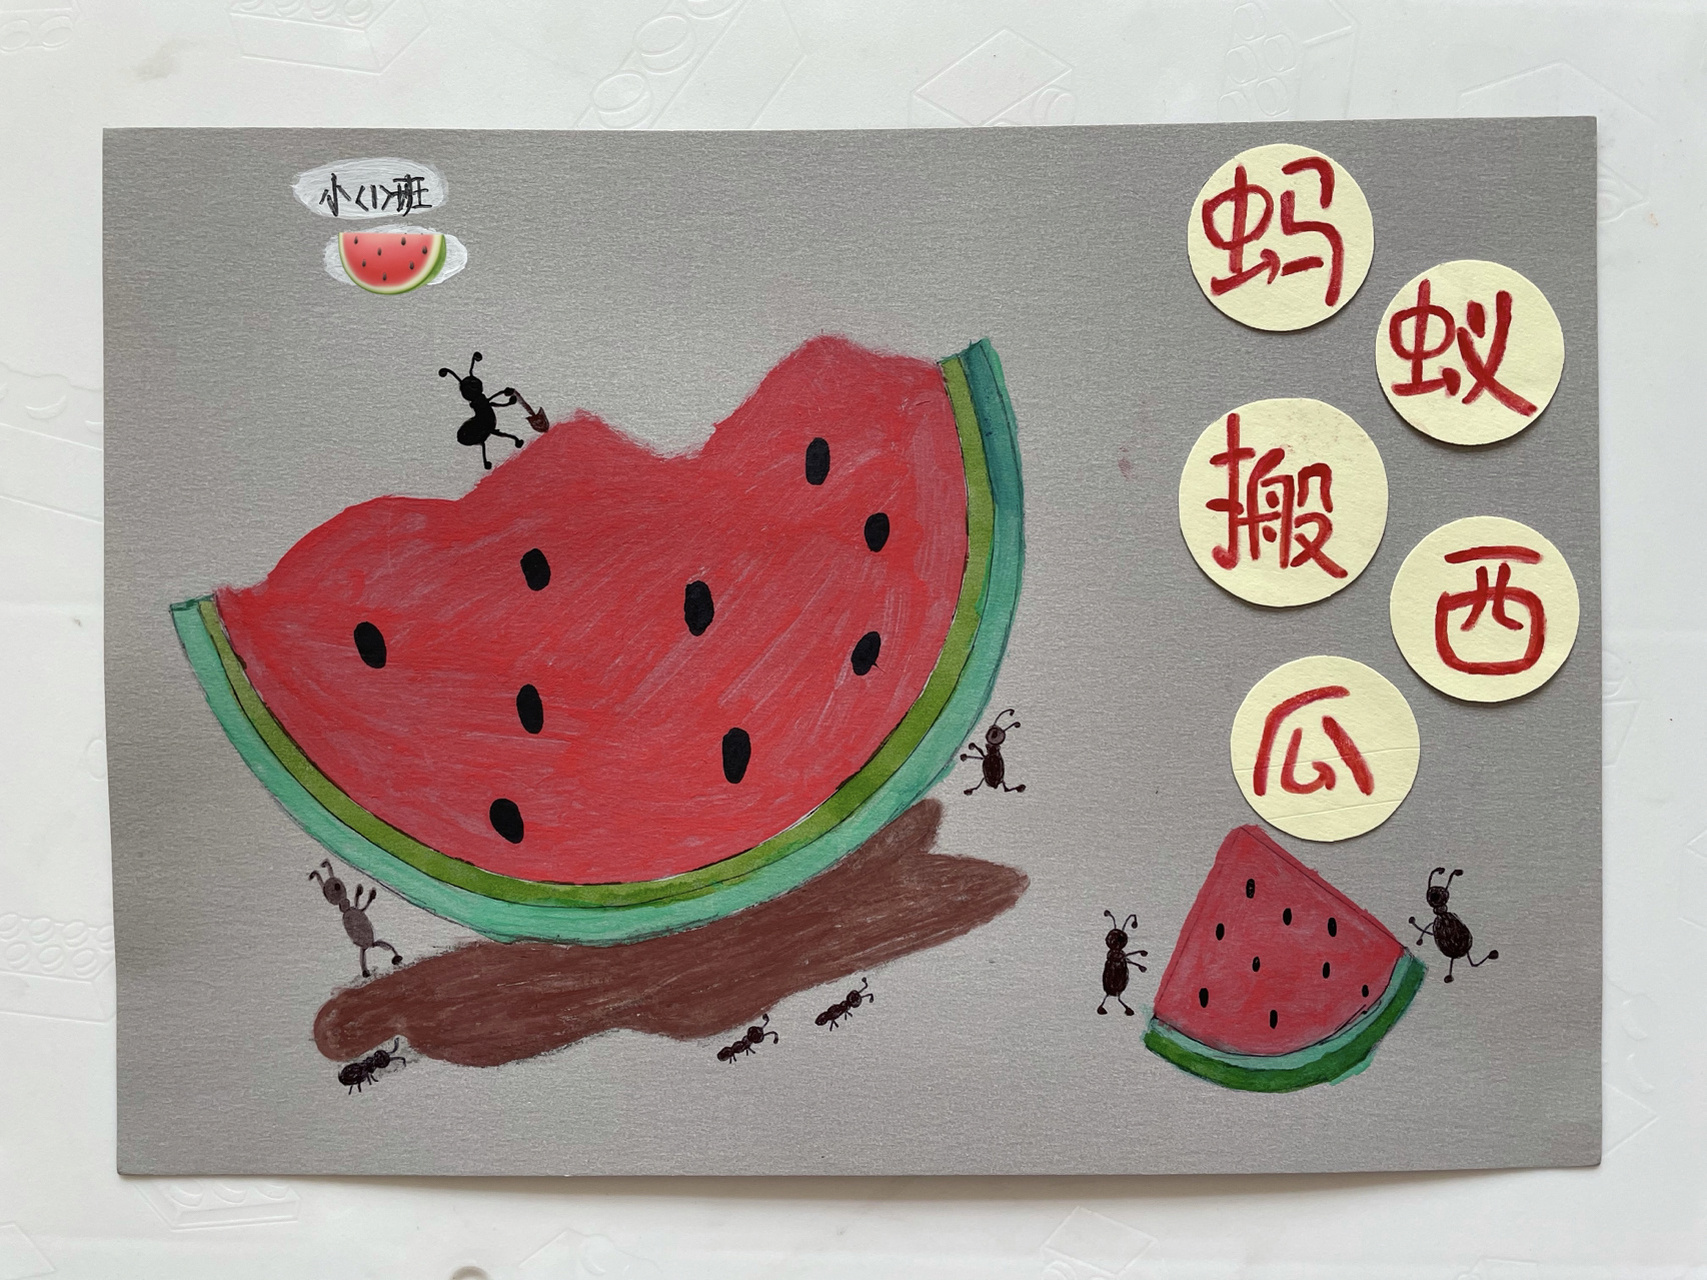 幼儿园自制绘本 幼儿园老师布置的作业,制作一本关于水果的图书,上网